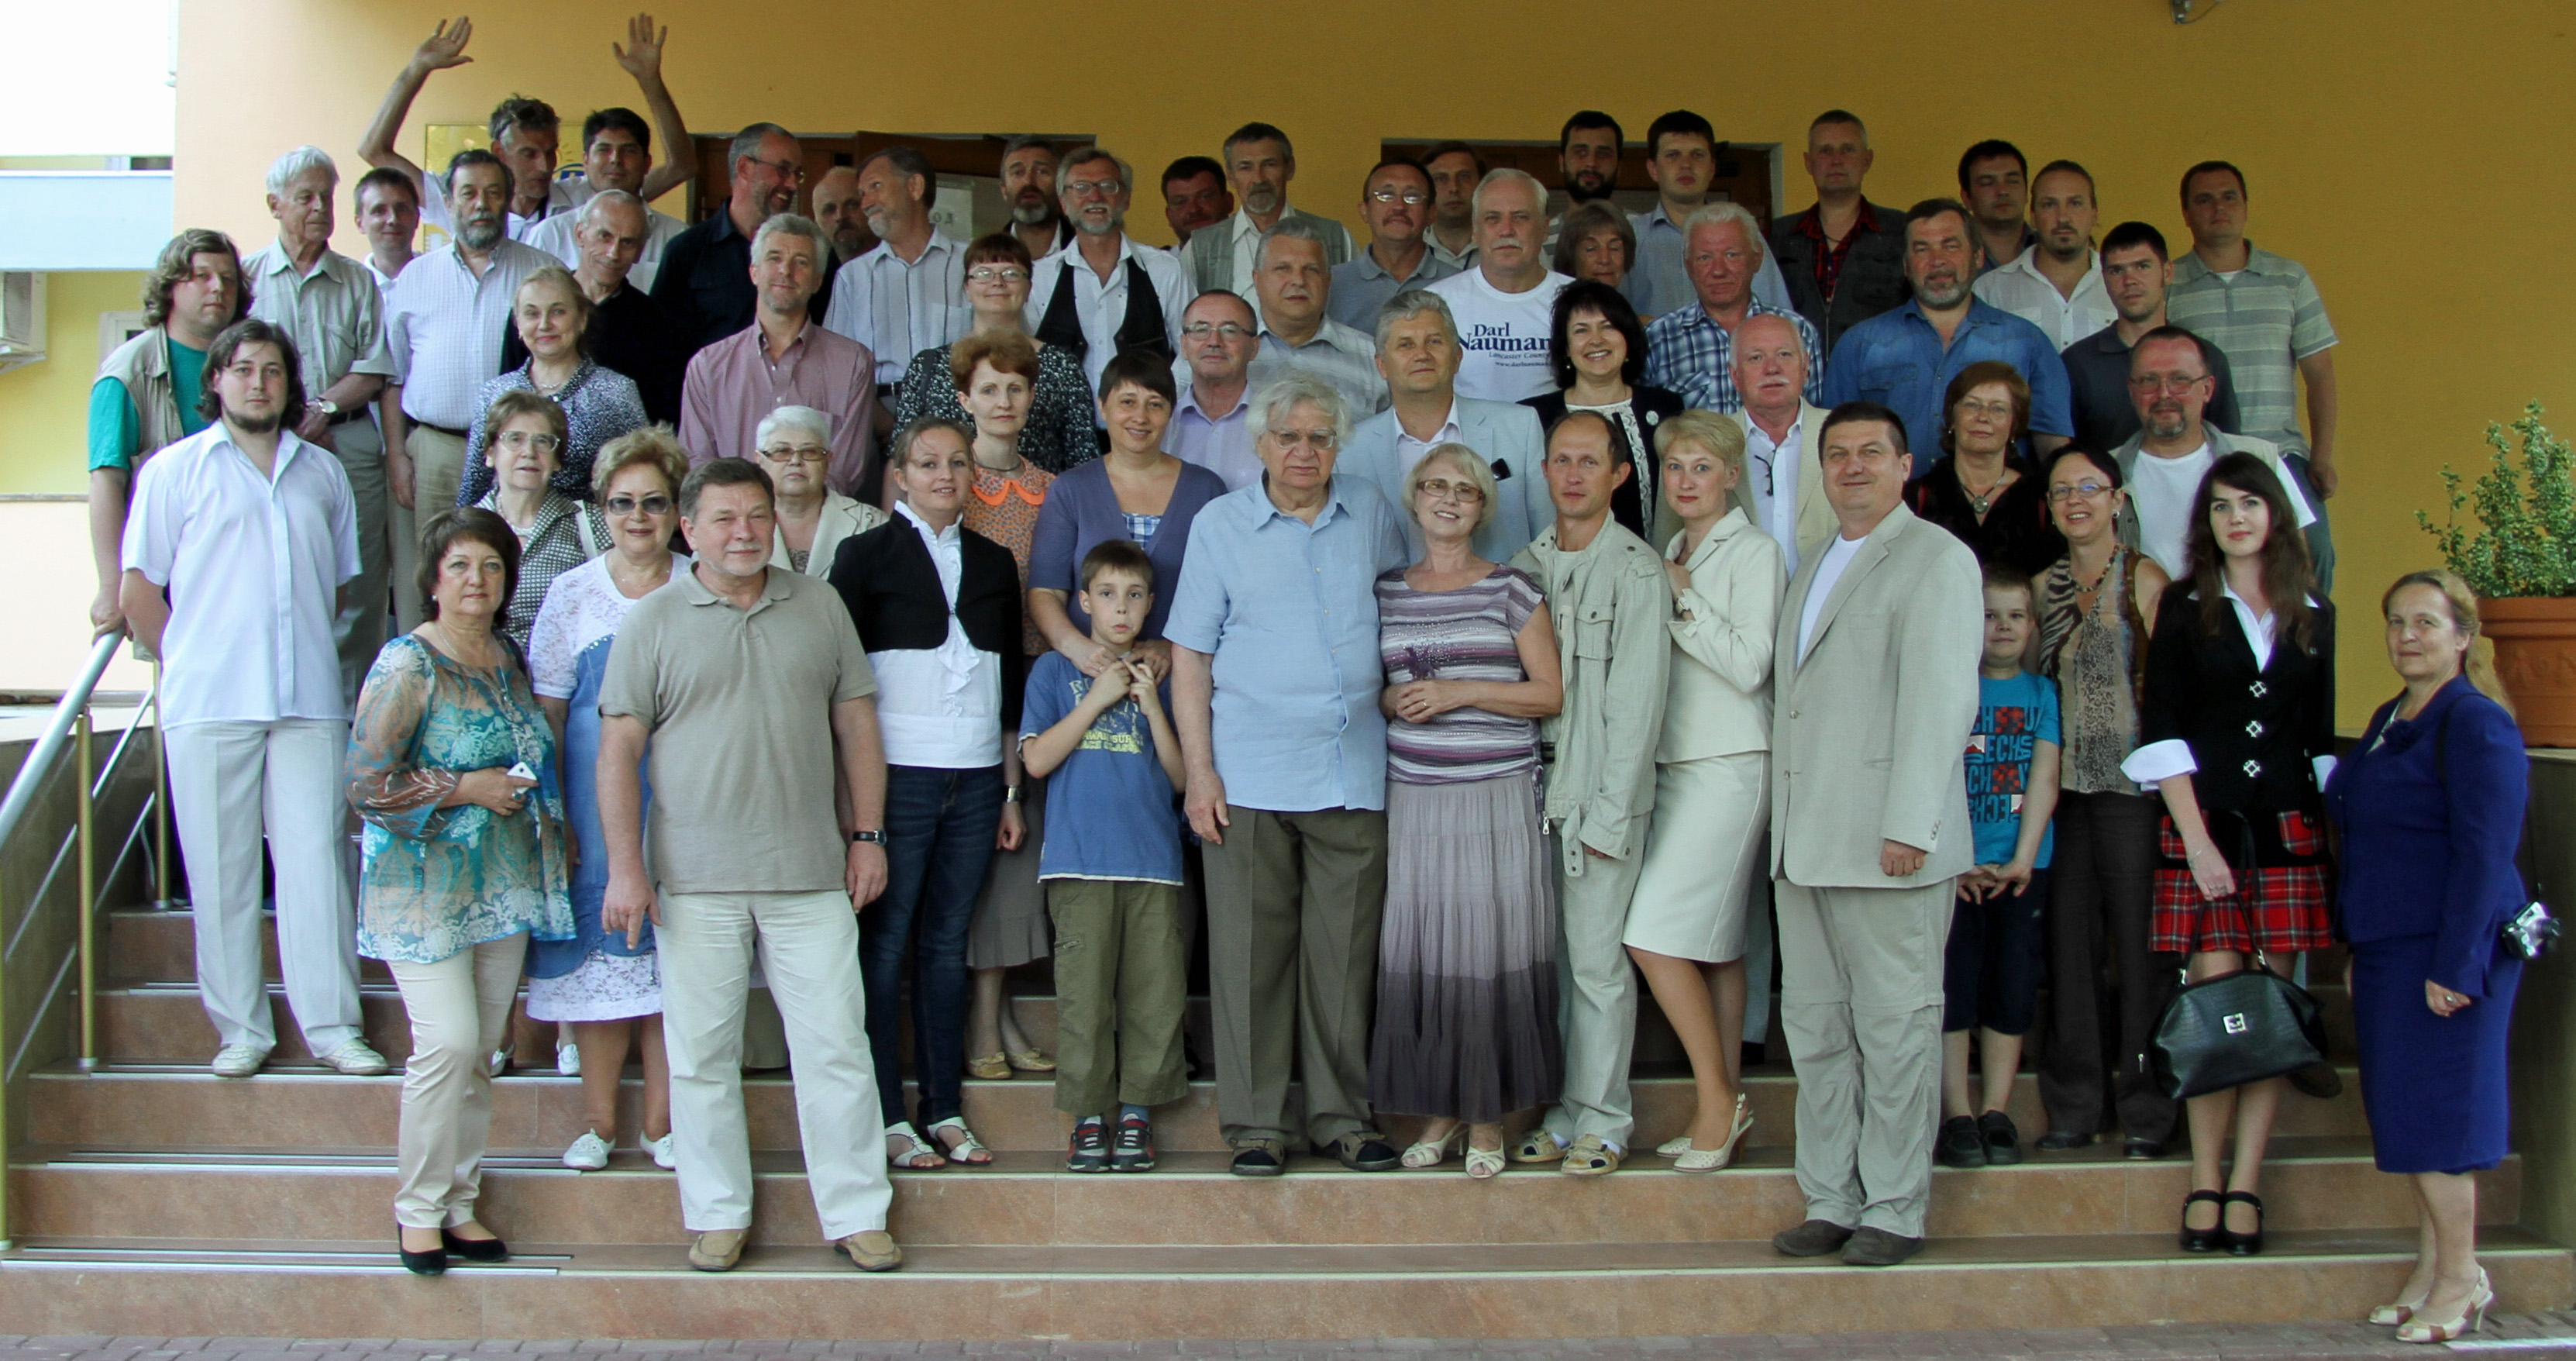 Members of the "Bosporan Raeding", Kerch, 23 May 2013